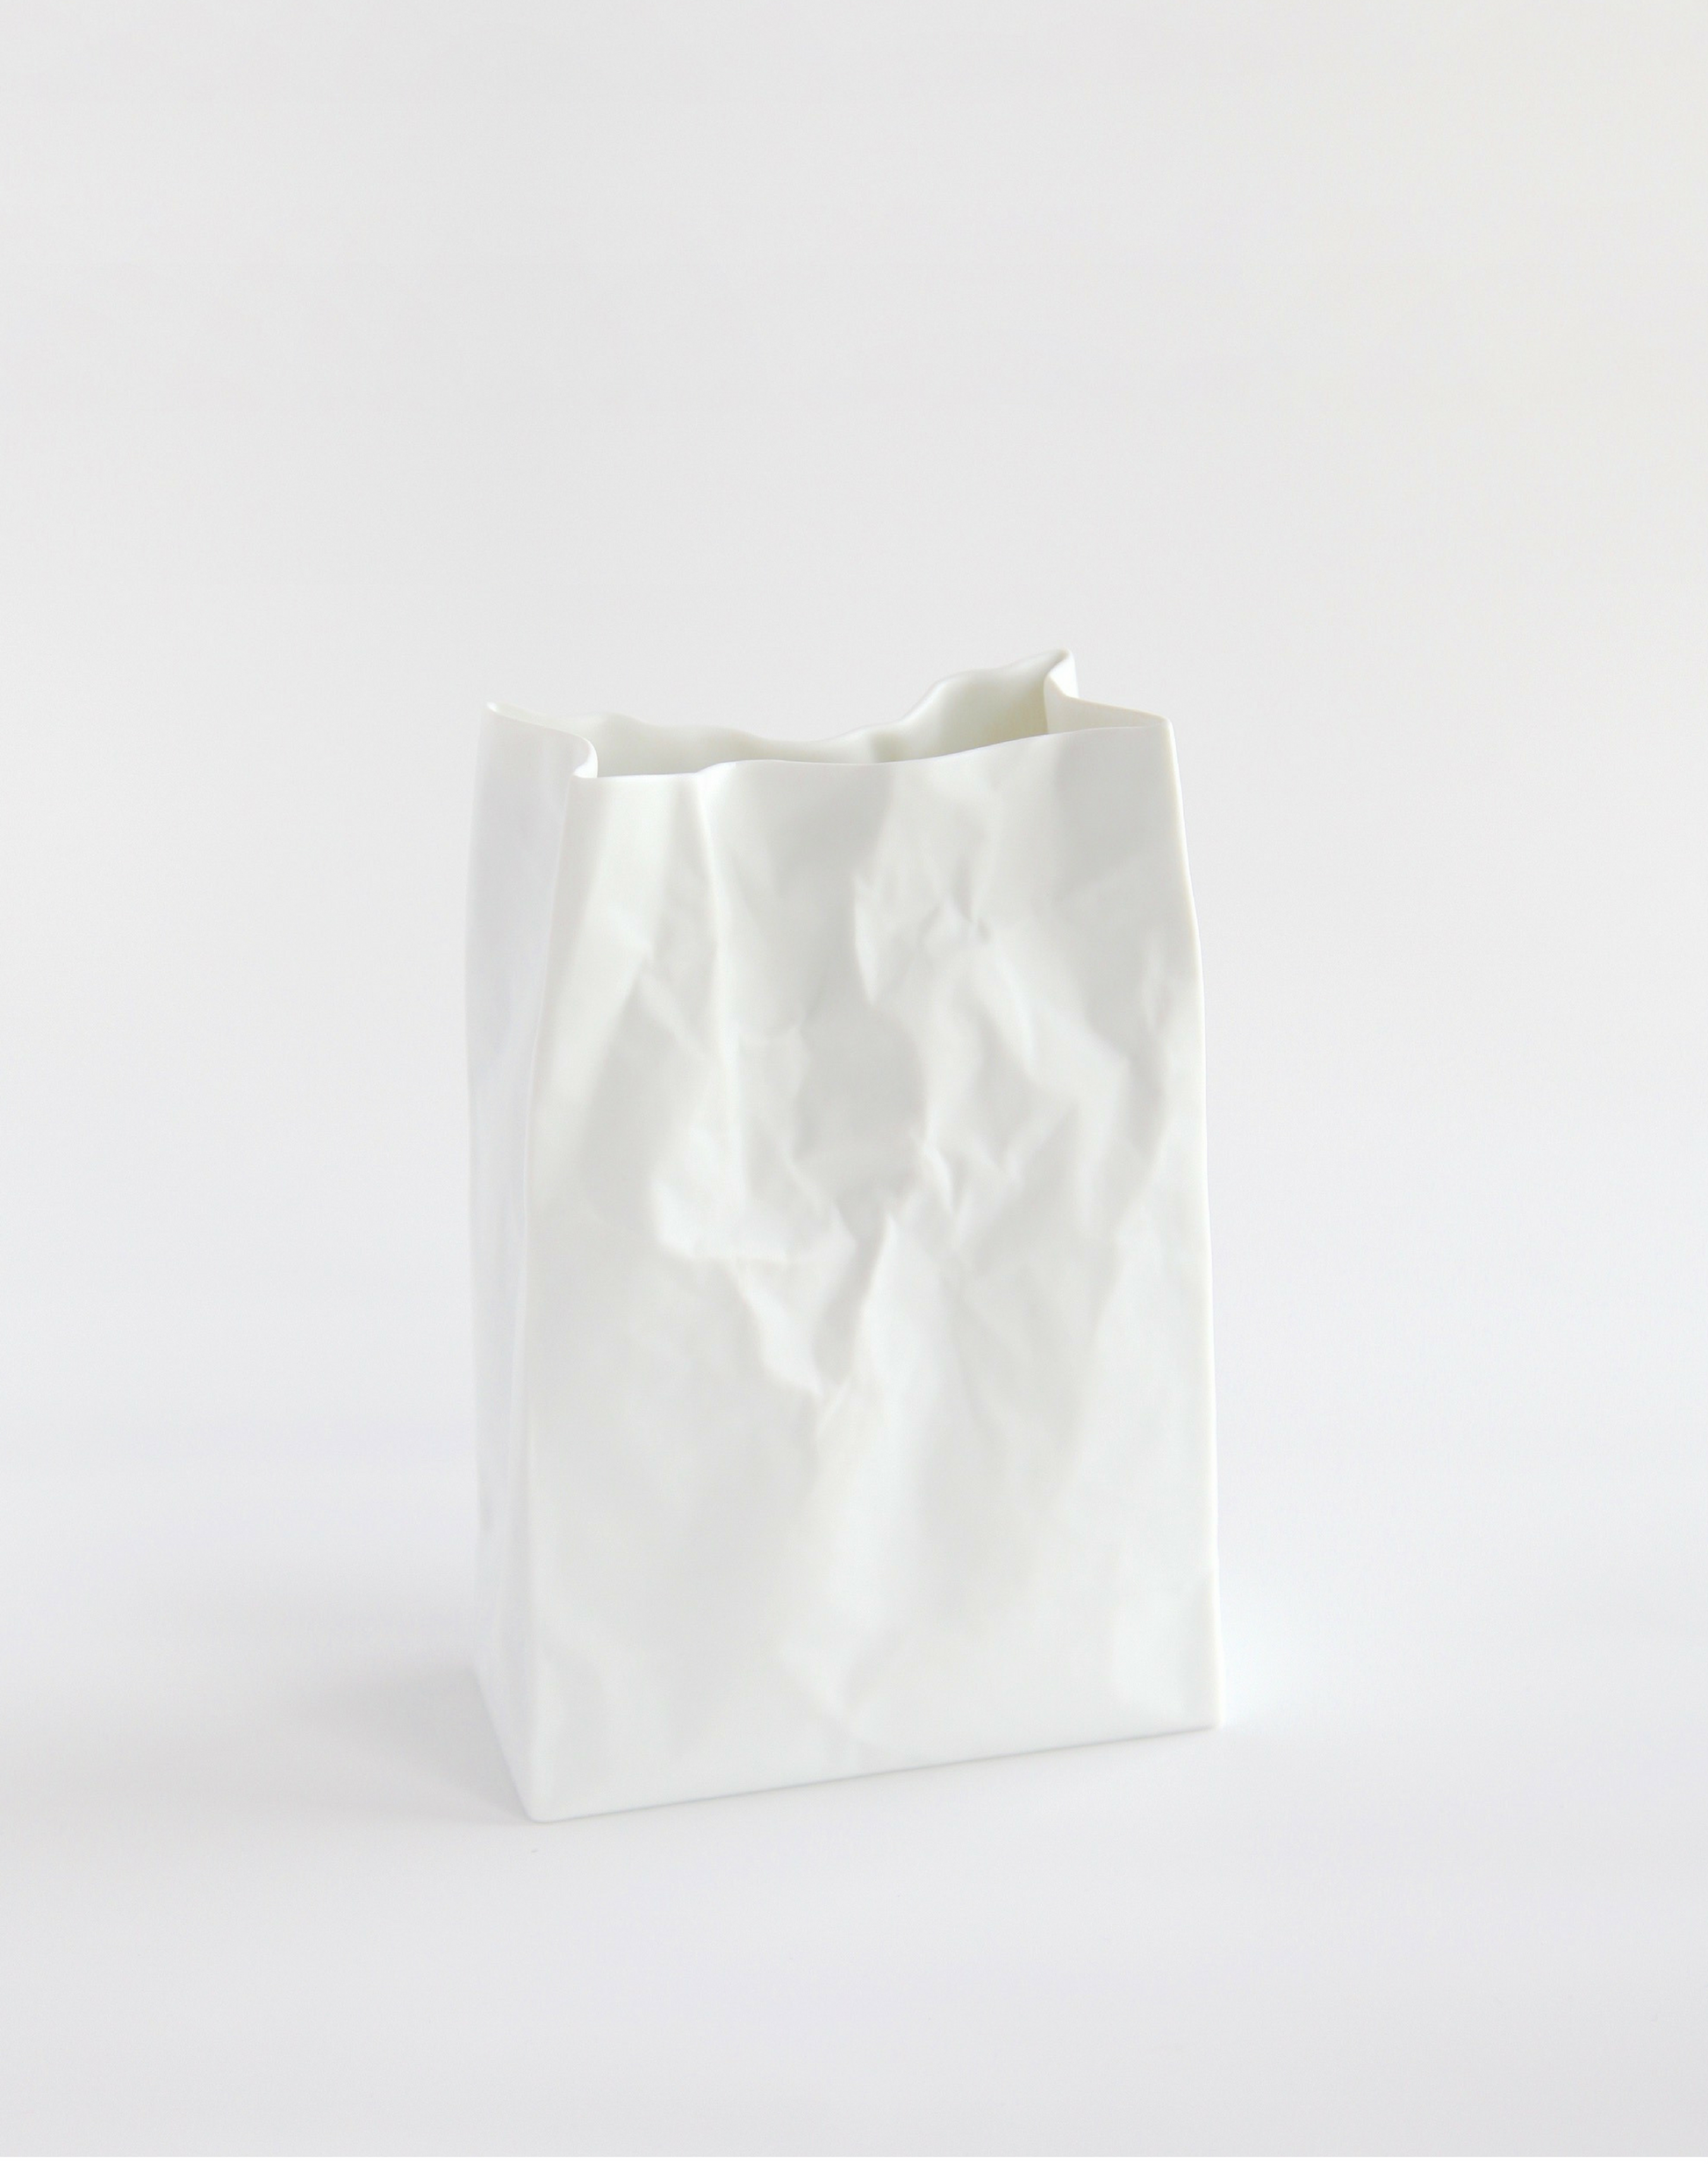 Makoto Komatsu vase paper bag moma